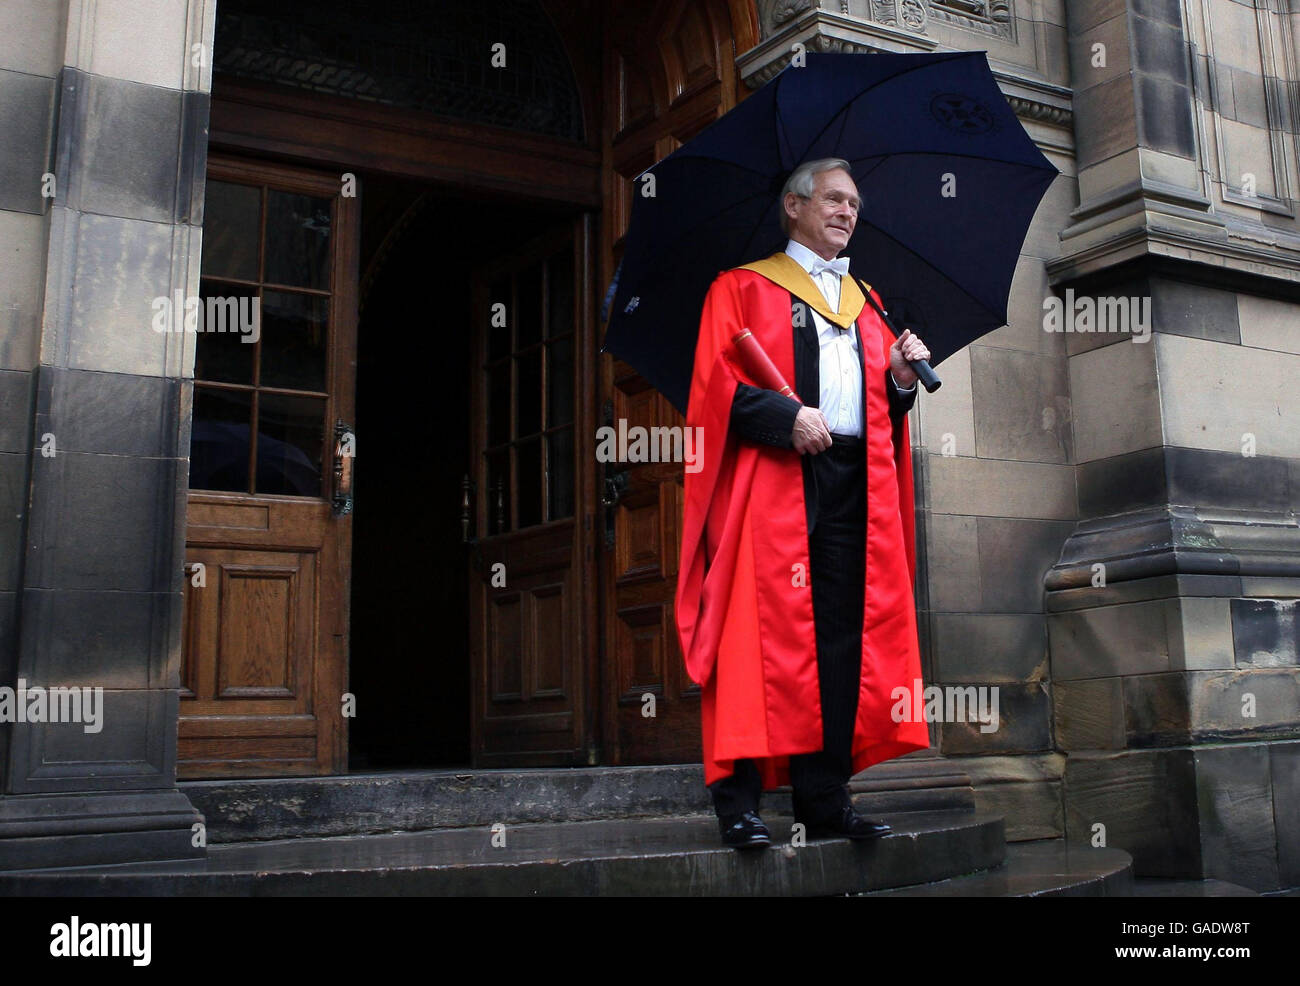 George Reid, PC, ancien membre et président du Parlement écossais, photographié après avoir reçu un doctorat honorifique de docteur honoris causa à l'Université d'Édimbourg. Banque D'Images